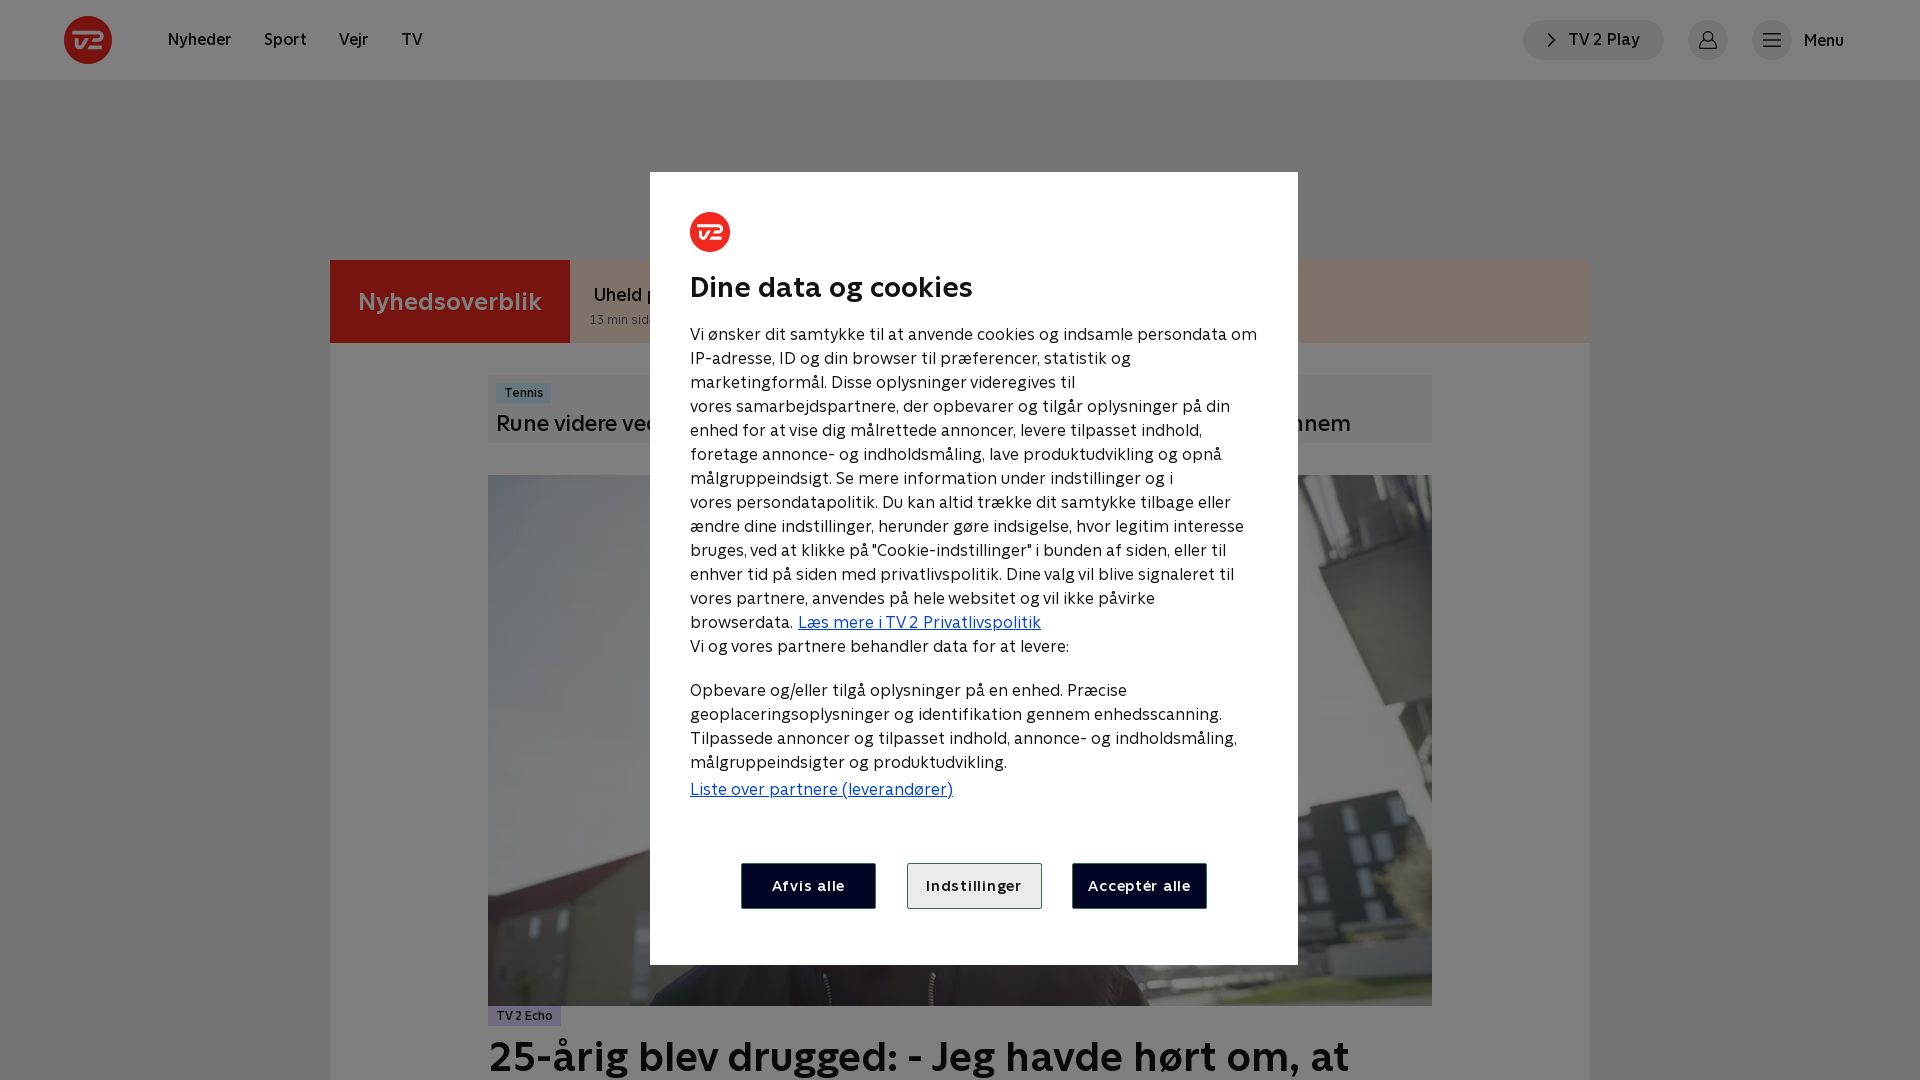 Stato del sito web tv2.dk è   ONLINE